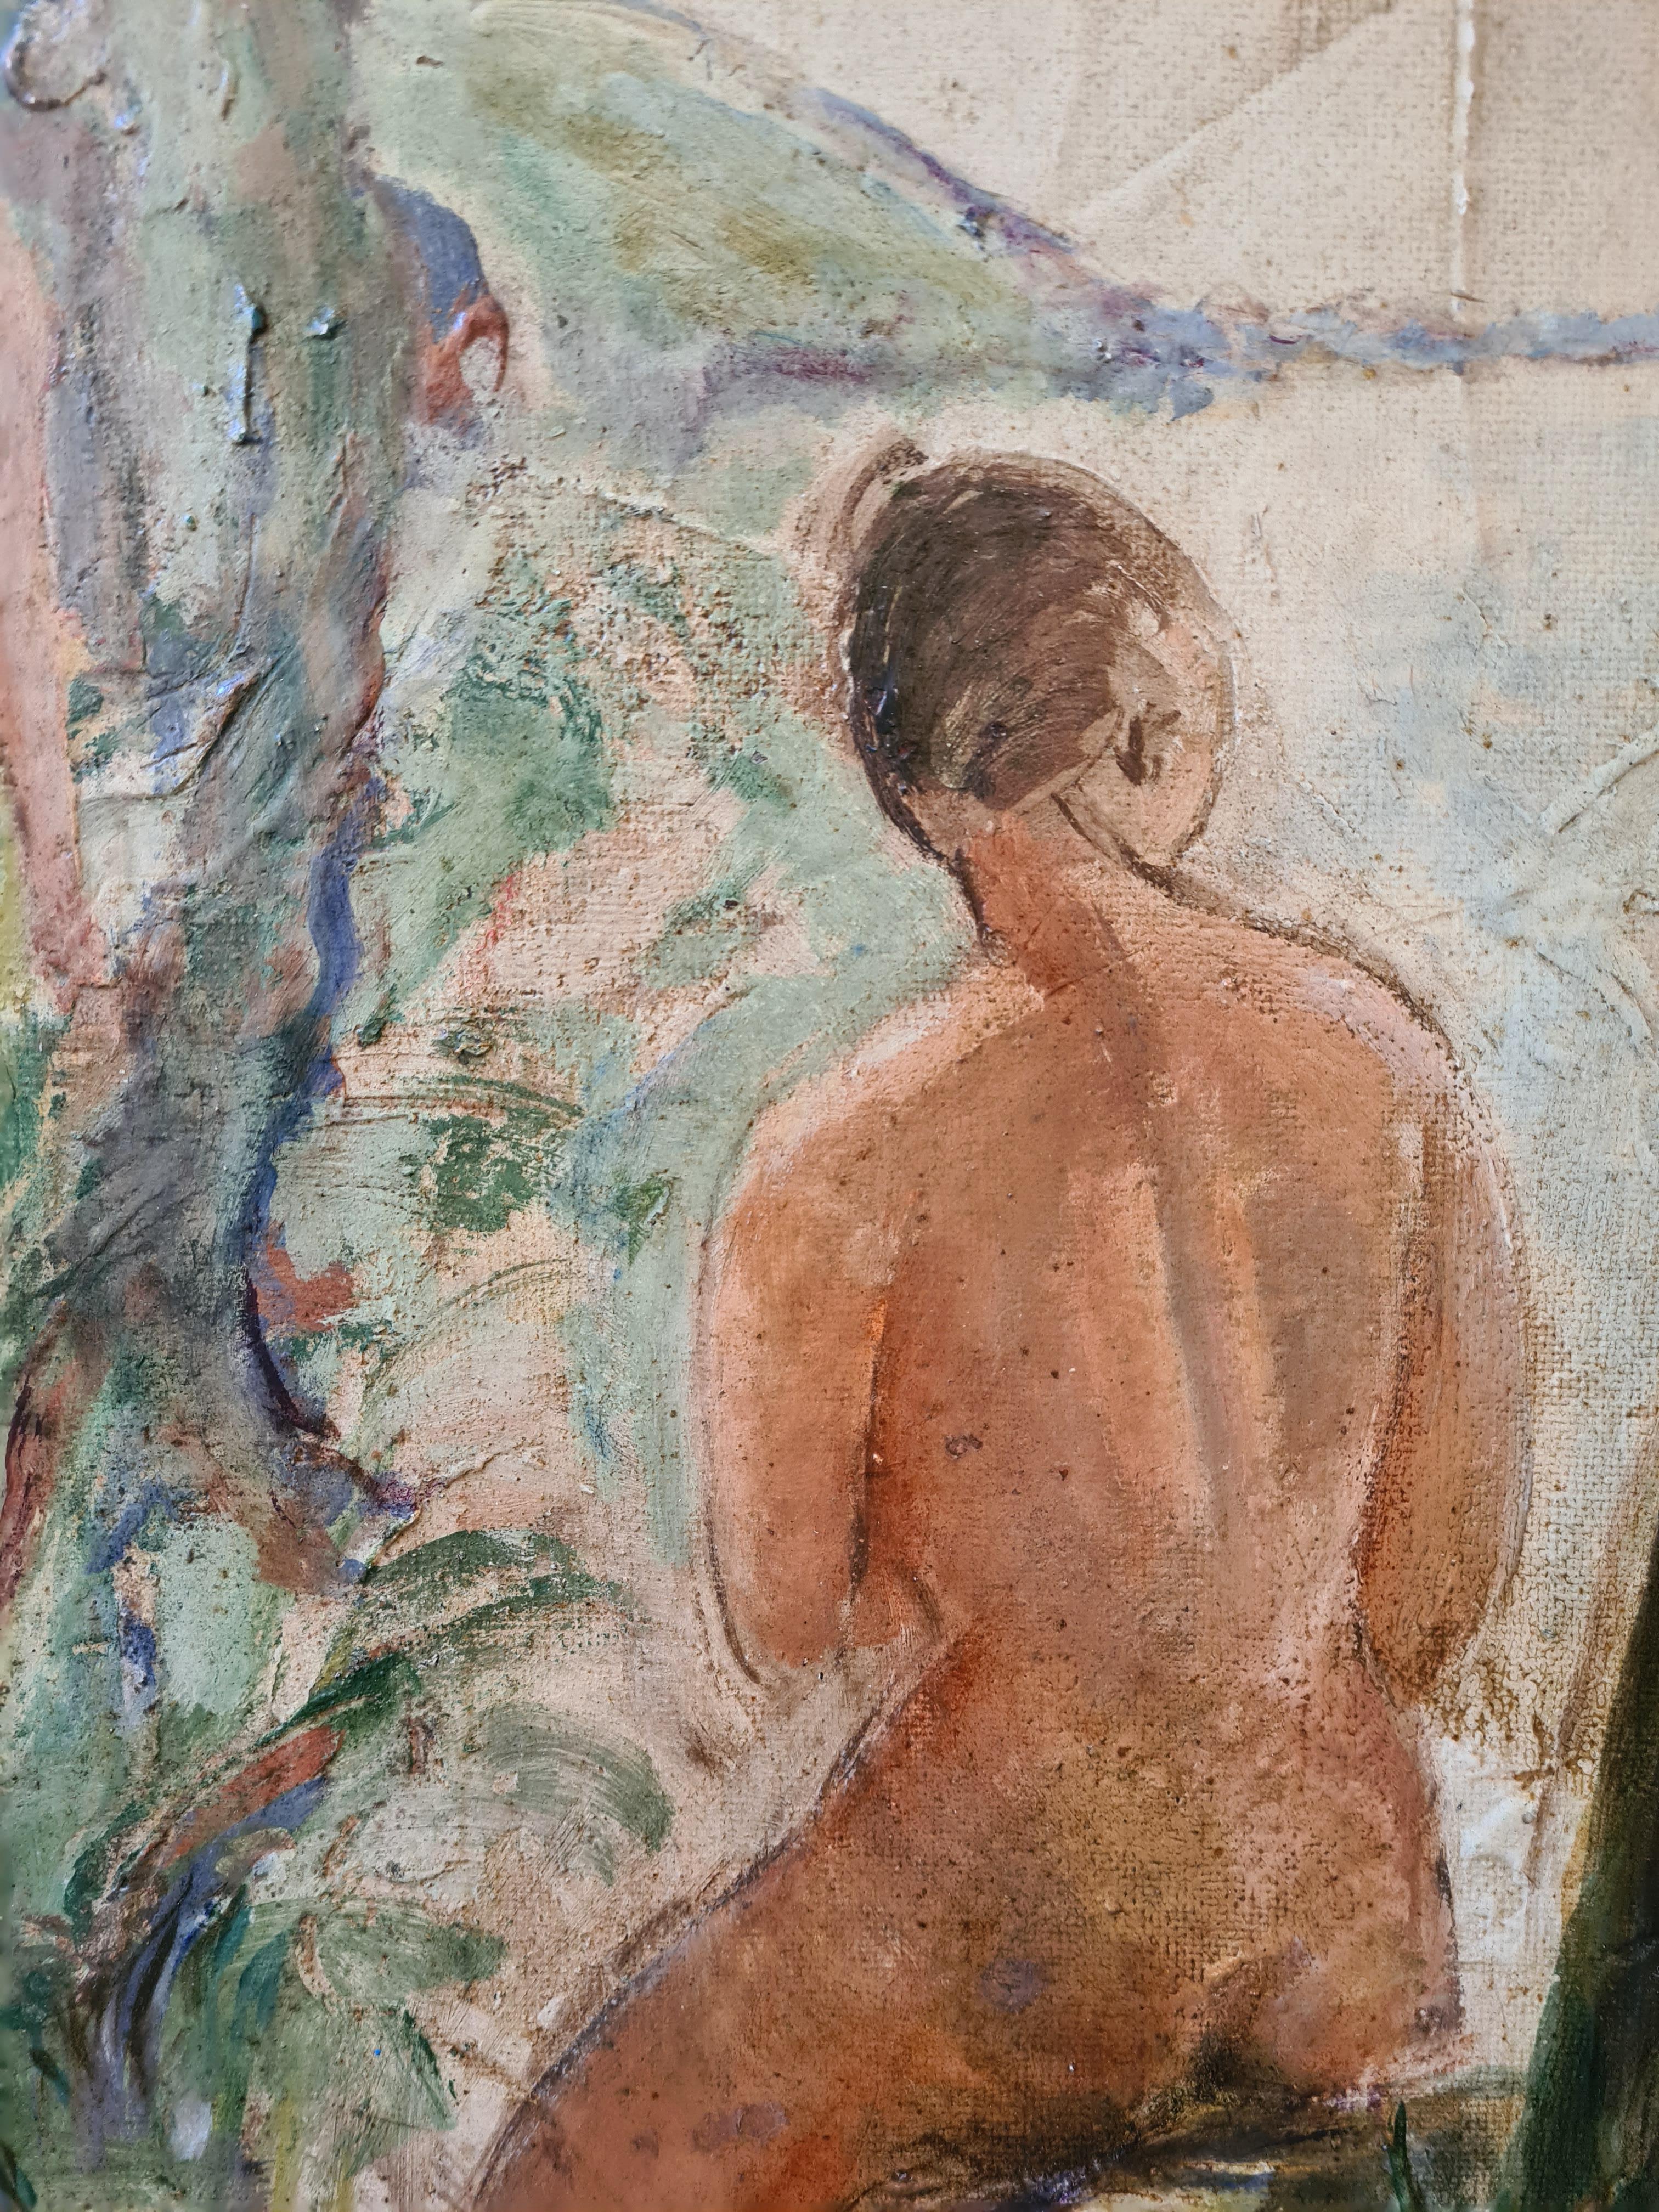 Impressionistisches Ölgemälde mit weiblichen Akten, die sich in einer Flusslandschaft tummeln. Das Gemälde ist unten links mit den Initialen 